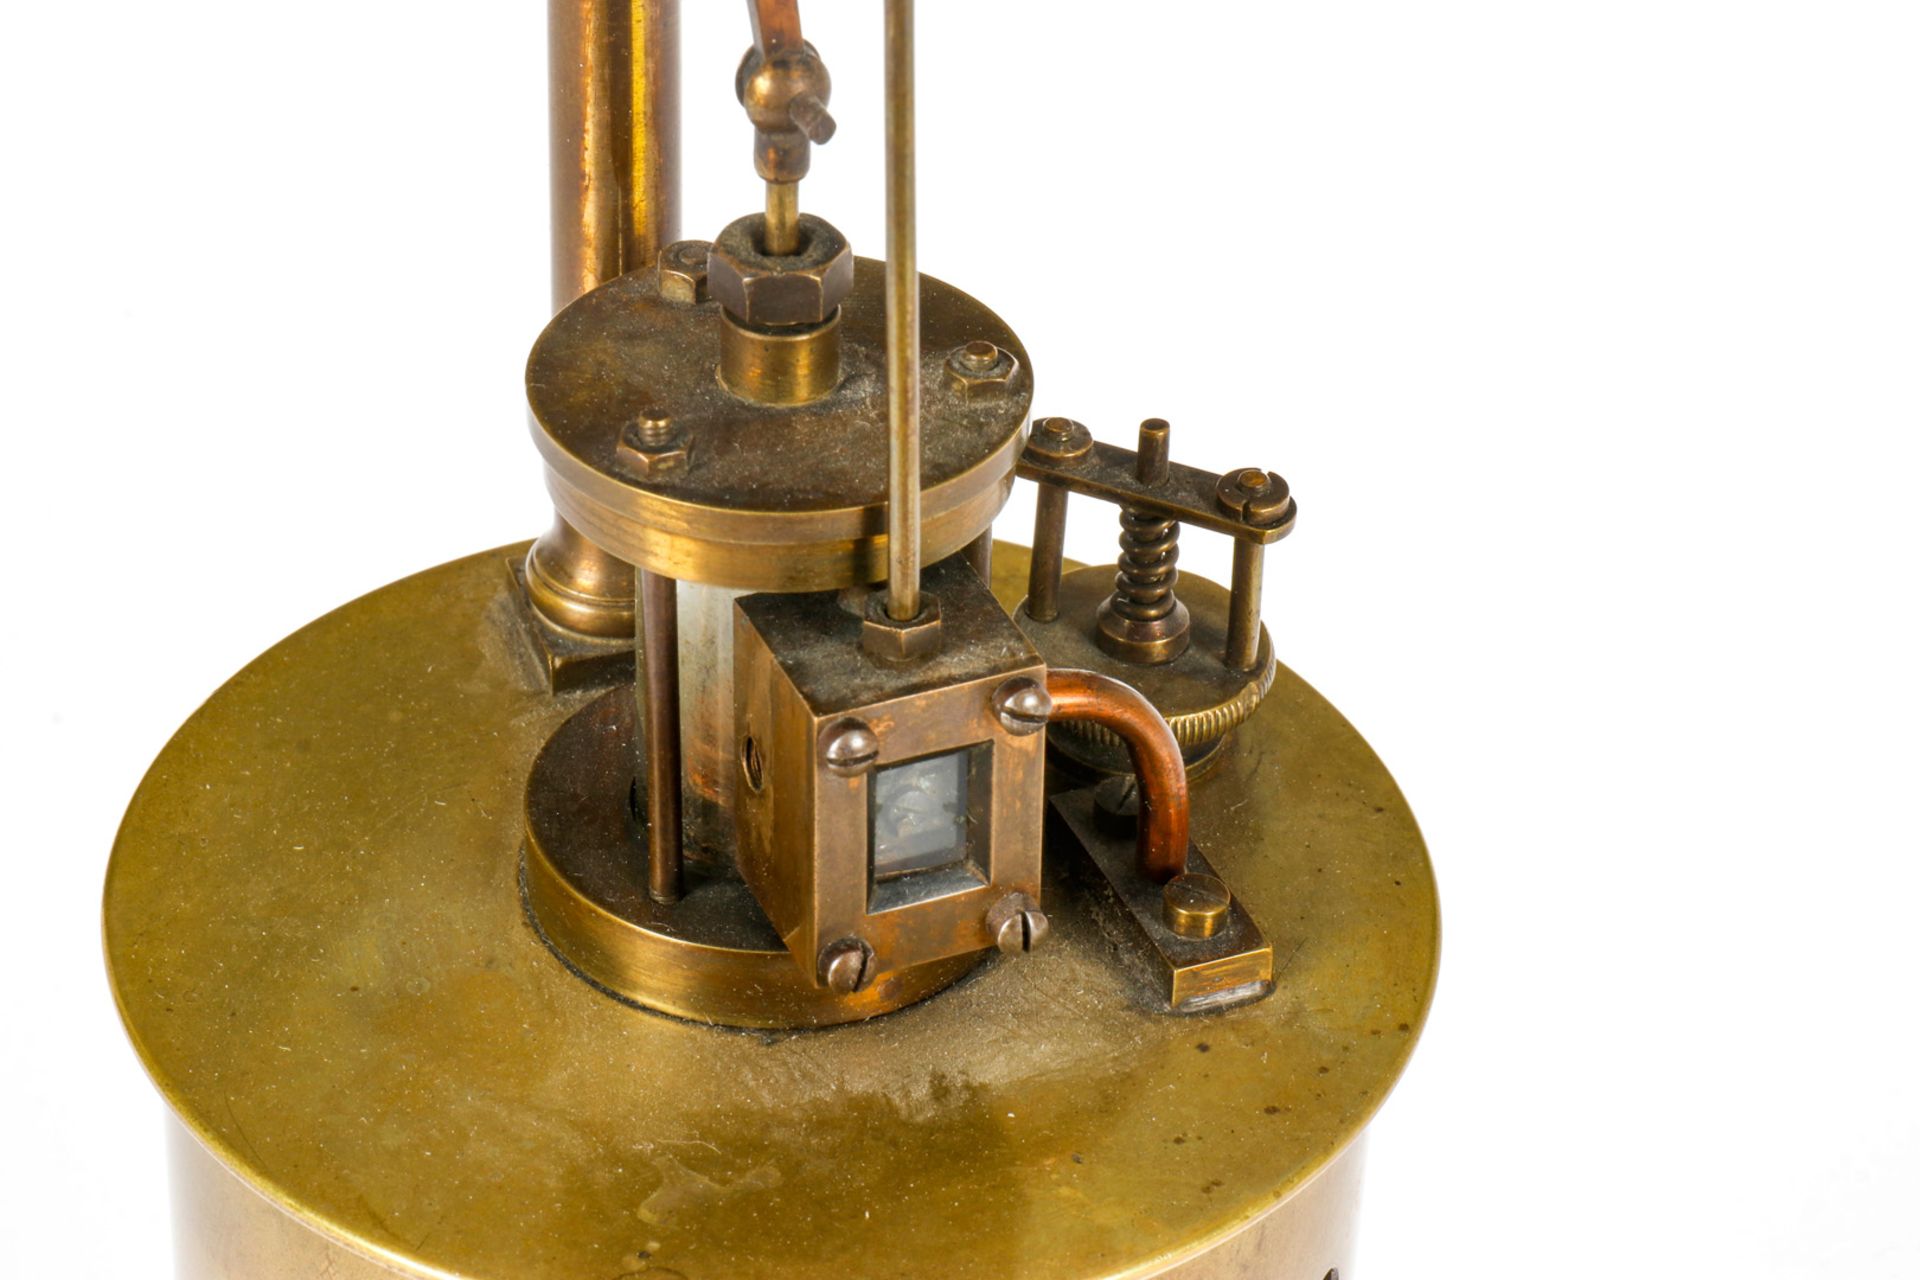 Radiguet stehende Dampfmaschine, Messingausführung, uralt, mit stehendem Glaszylinder, mit - Bild 3 aus 3